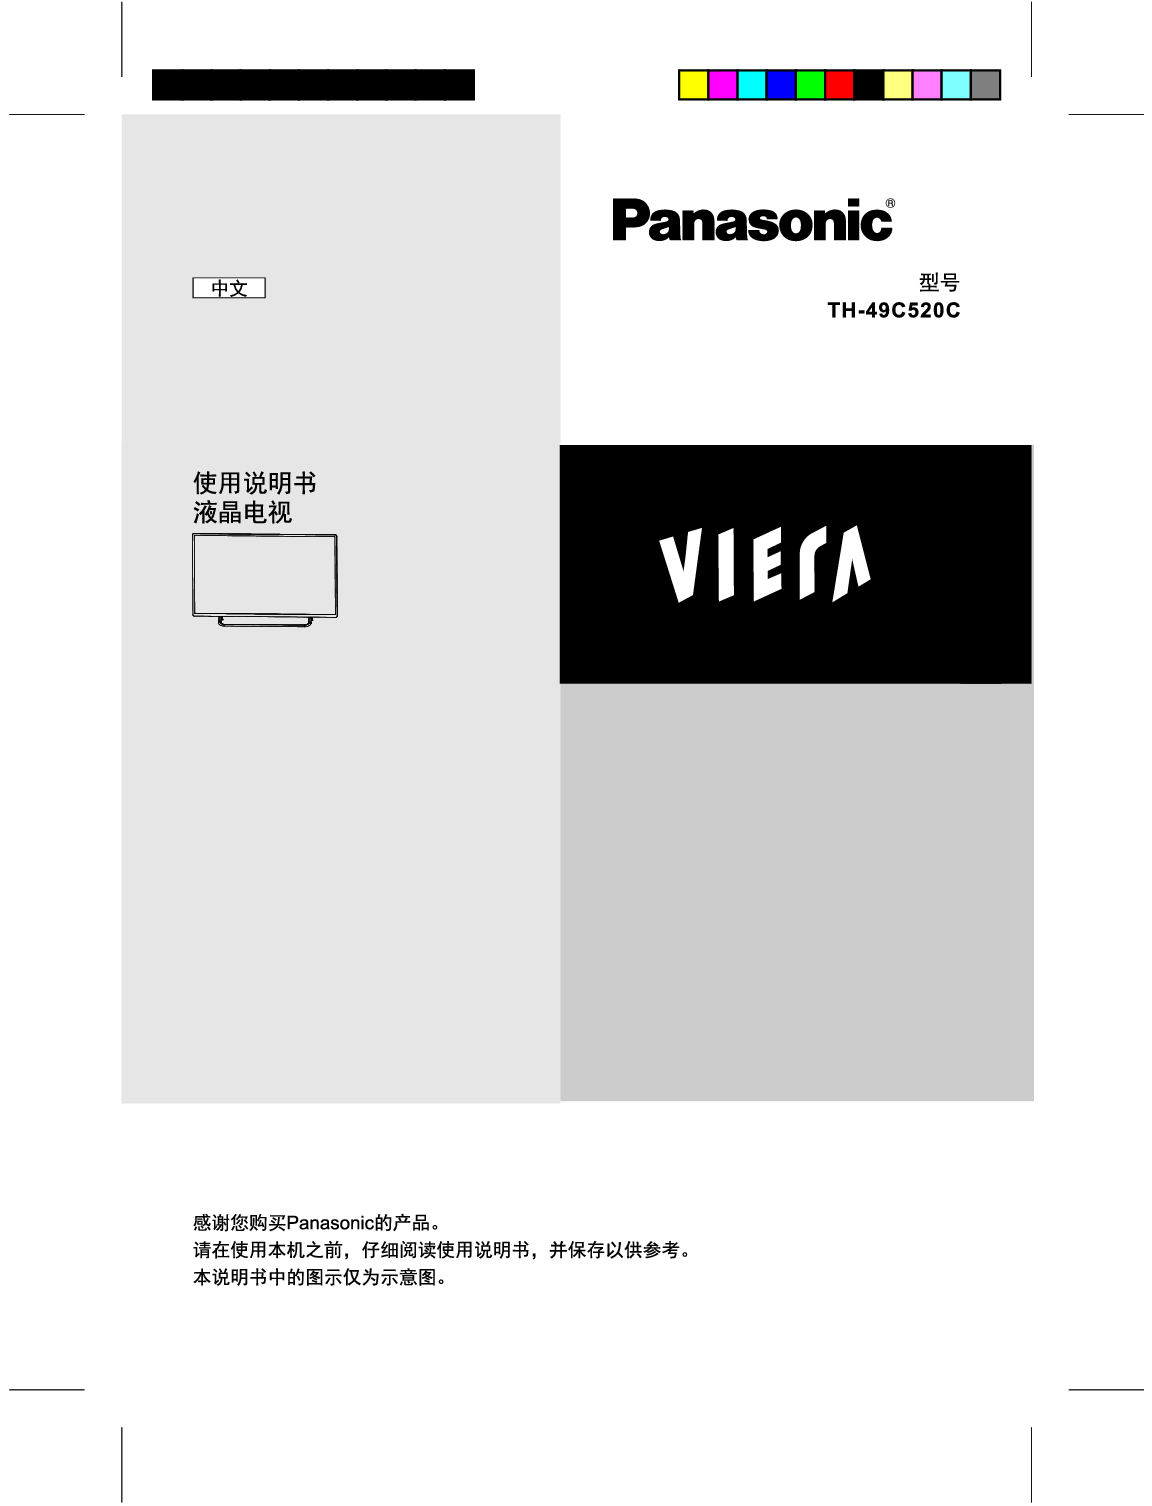 松下 Panasonic TH-49C520C 使用说明书 封面